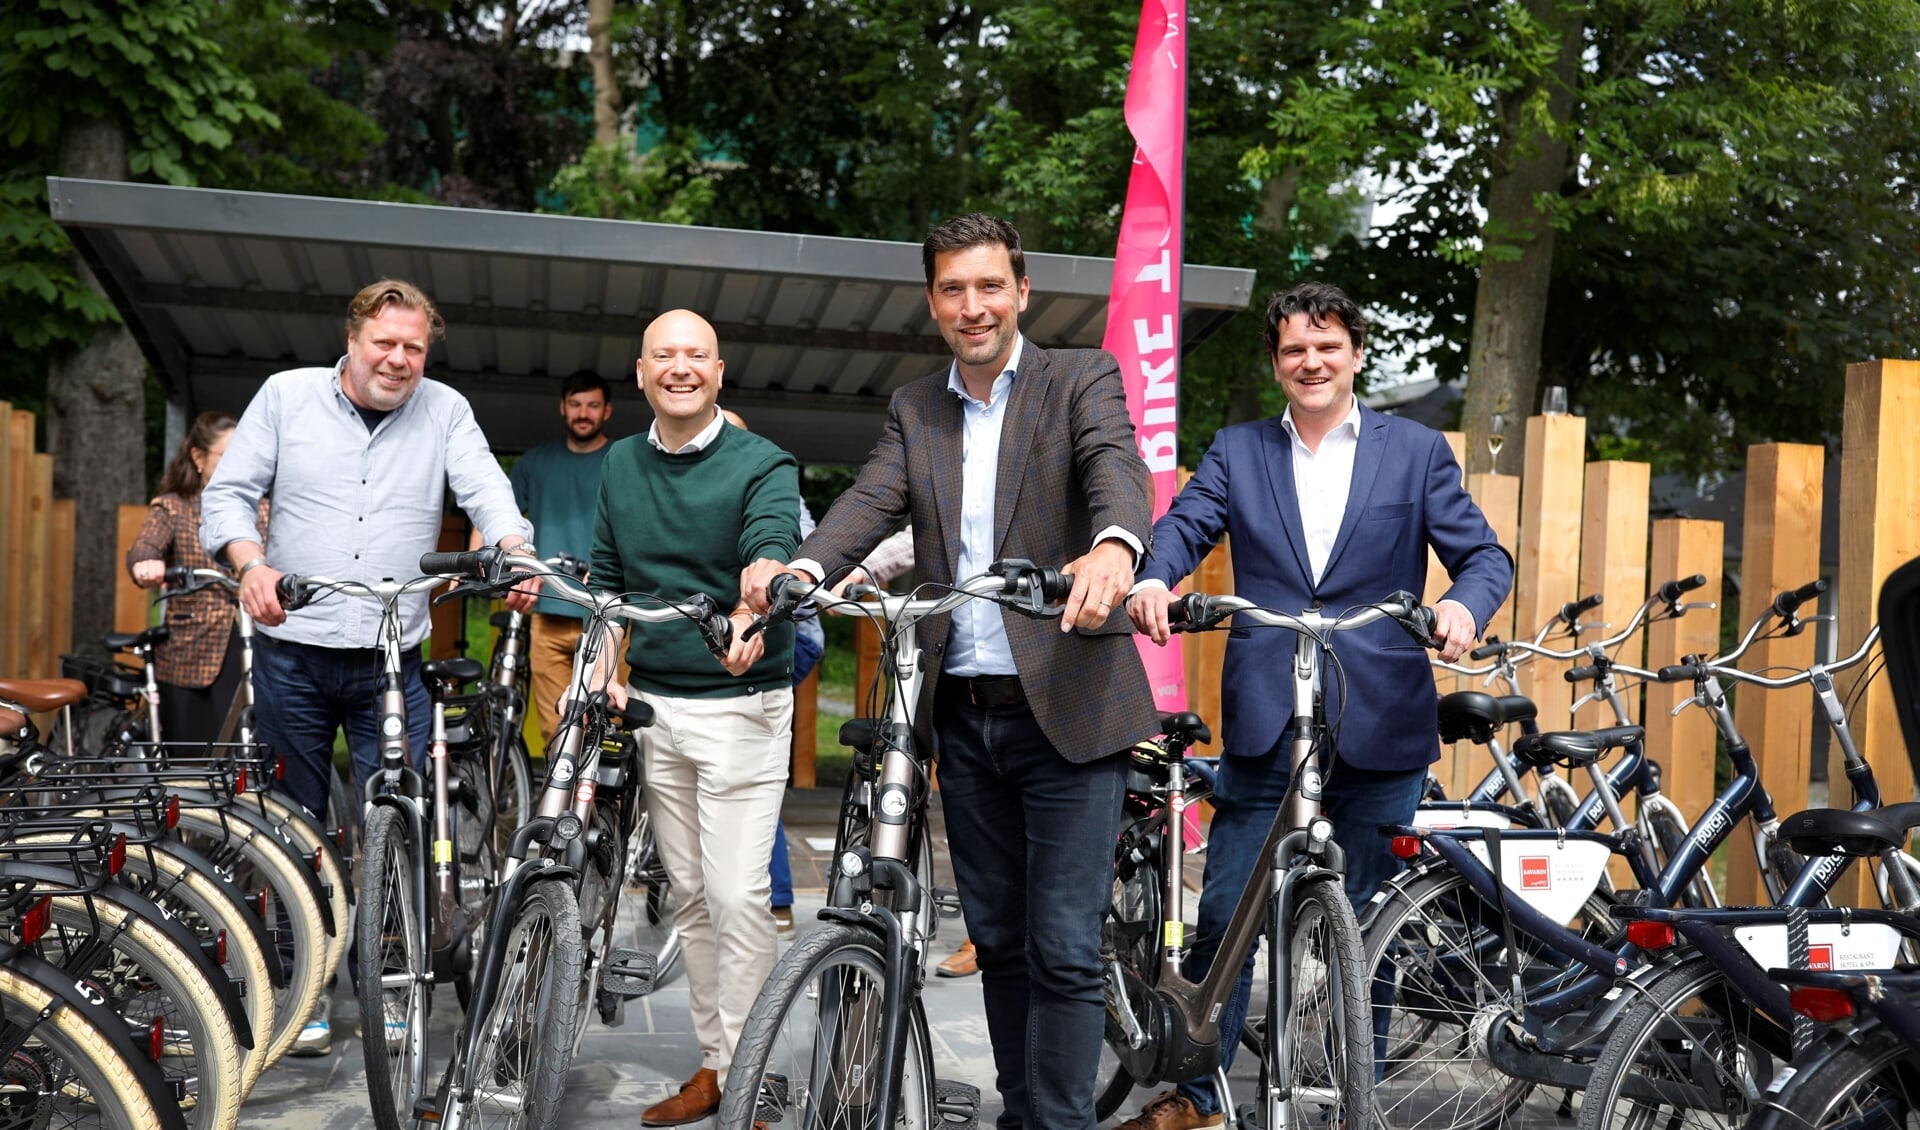  Donderdag werd de z'Bike to Binck hub' feestelijk geopend in aanwezigheid van de Haagse wethouder Robert van Asten en zijn Rijswijkse collega Armand van de Laar.